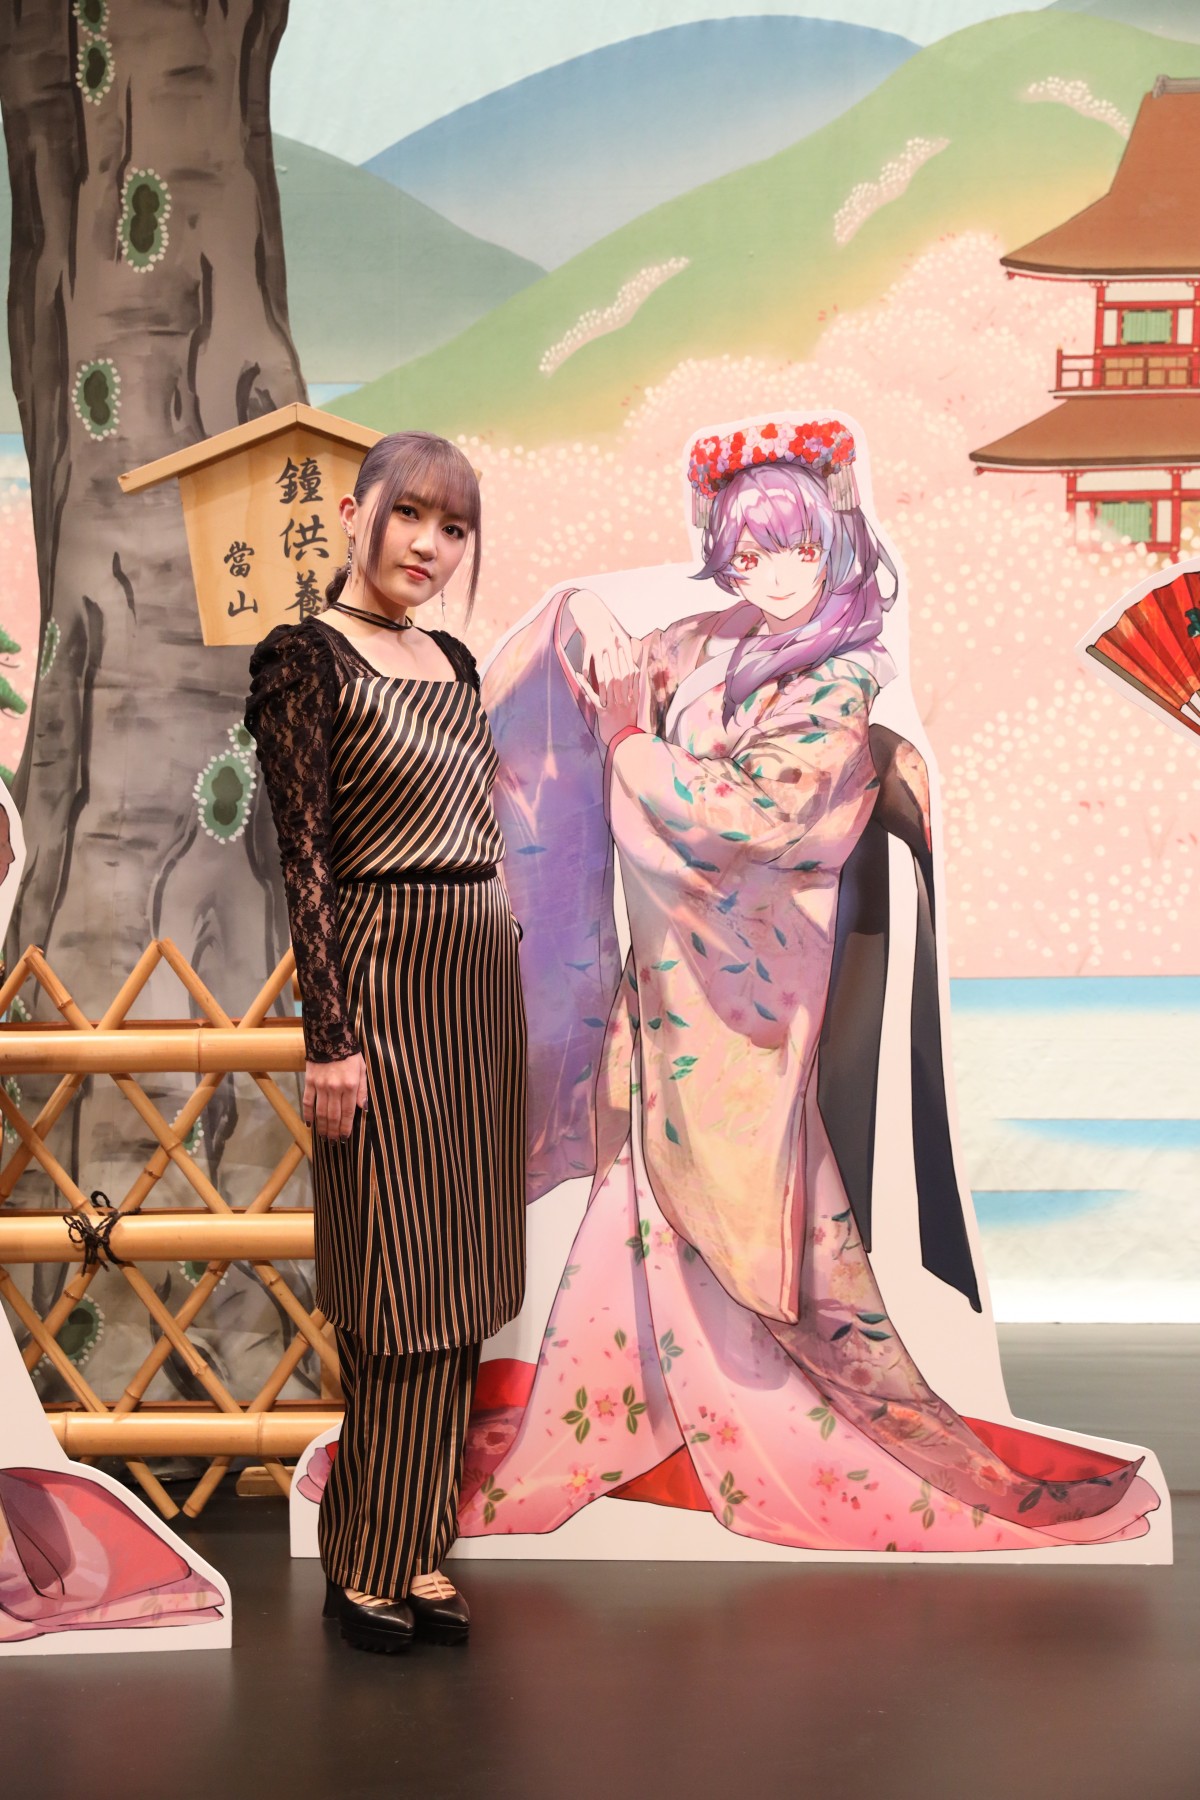 マクロス×歌舞伎のコラボ企画展が開幕 JUNNAが見学「ワルキューレの個性とこんなにも合う衣裳があるのかと驚きました」 | ORICON NEWS